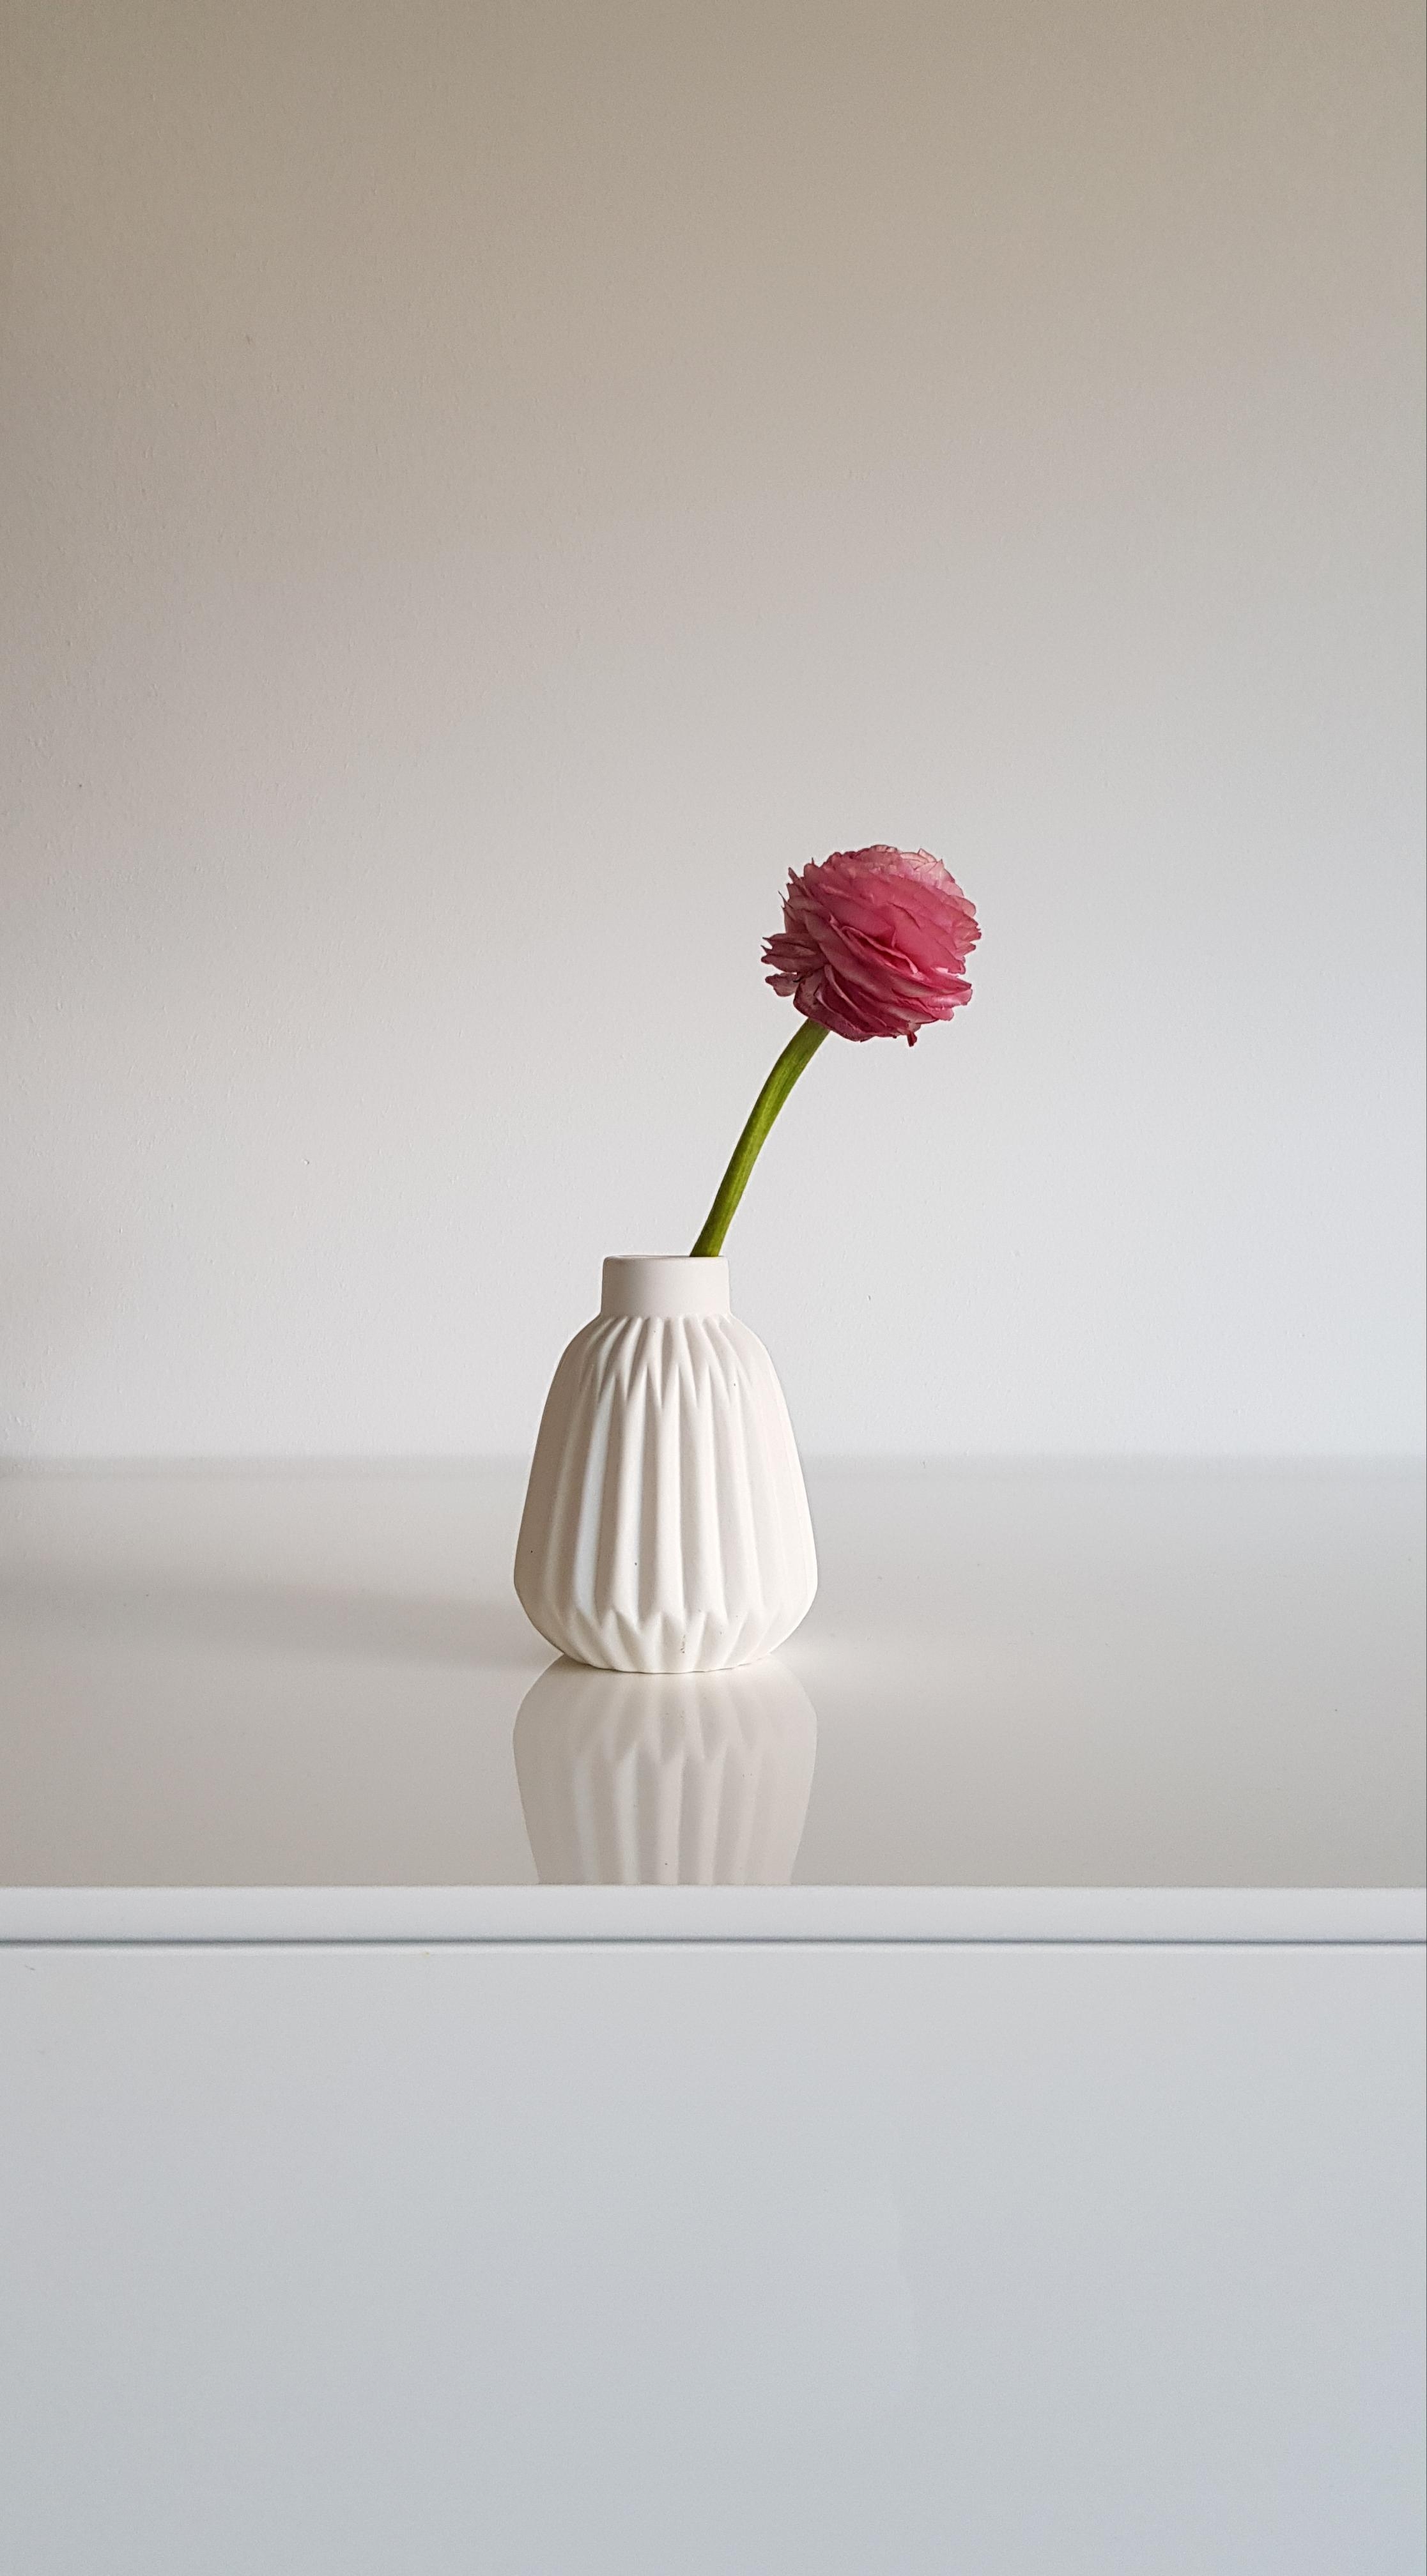 Heute bin ich mal ganz minimalistisch in Bild und Wort! Happy Day! :-) #vase #vasen #blumen